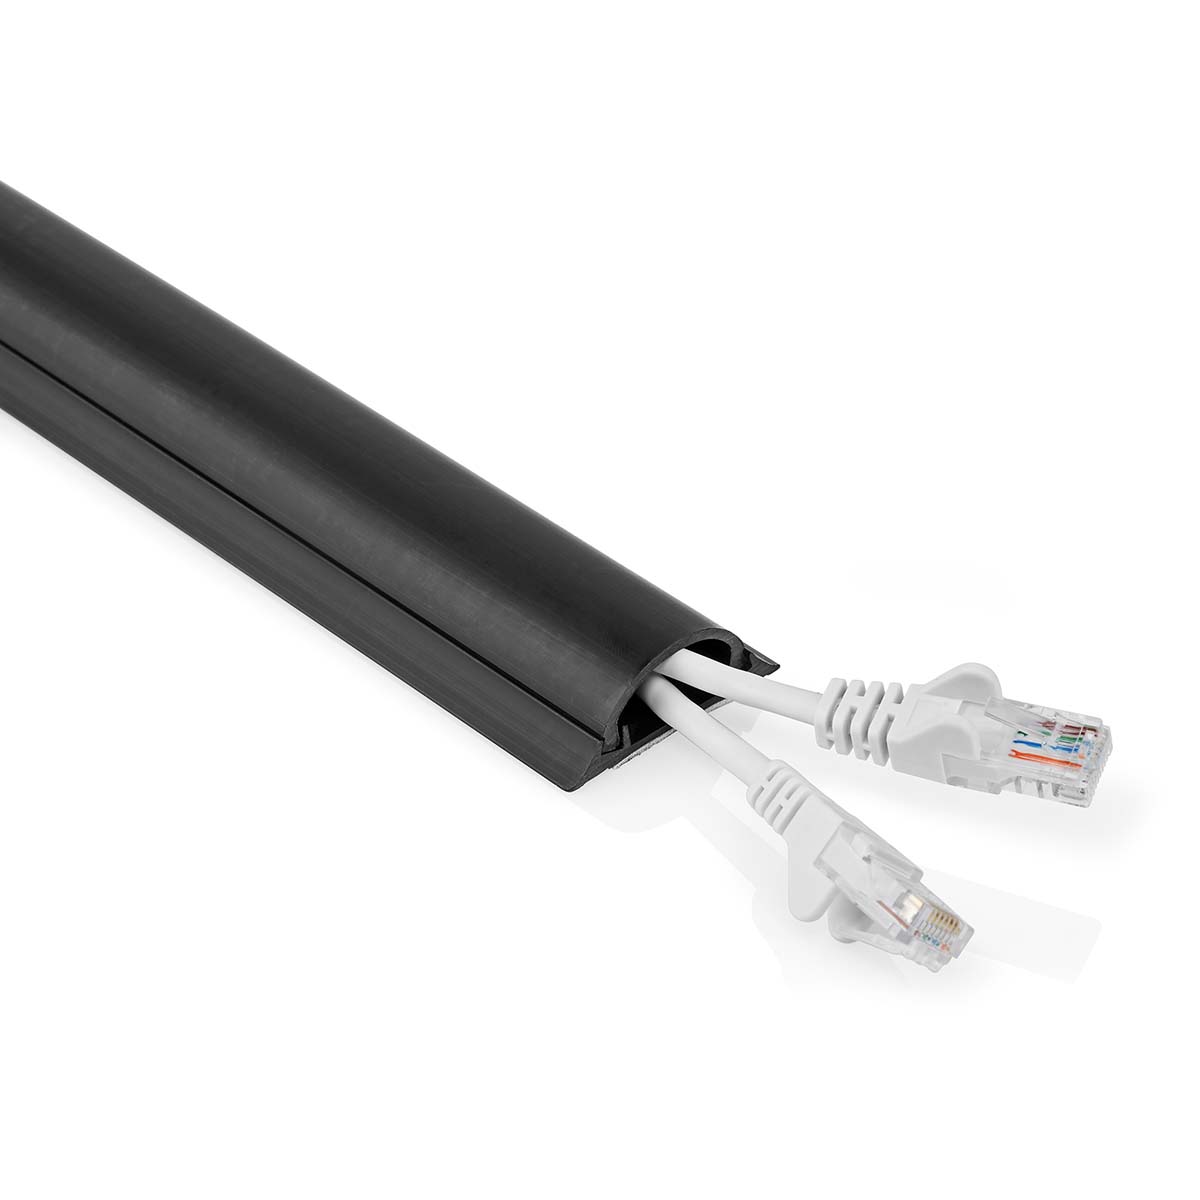 Kabelová lišta pro kabely do 16 mm, PVC, 1.5 m, černá (CMDT4516BK1500)